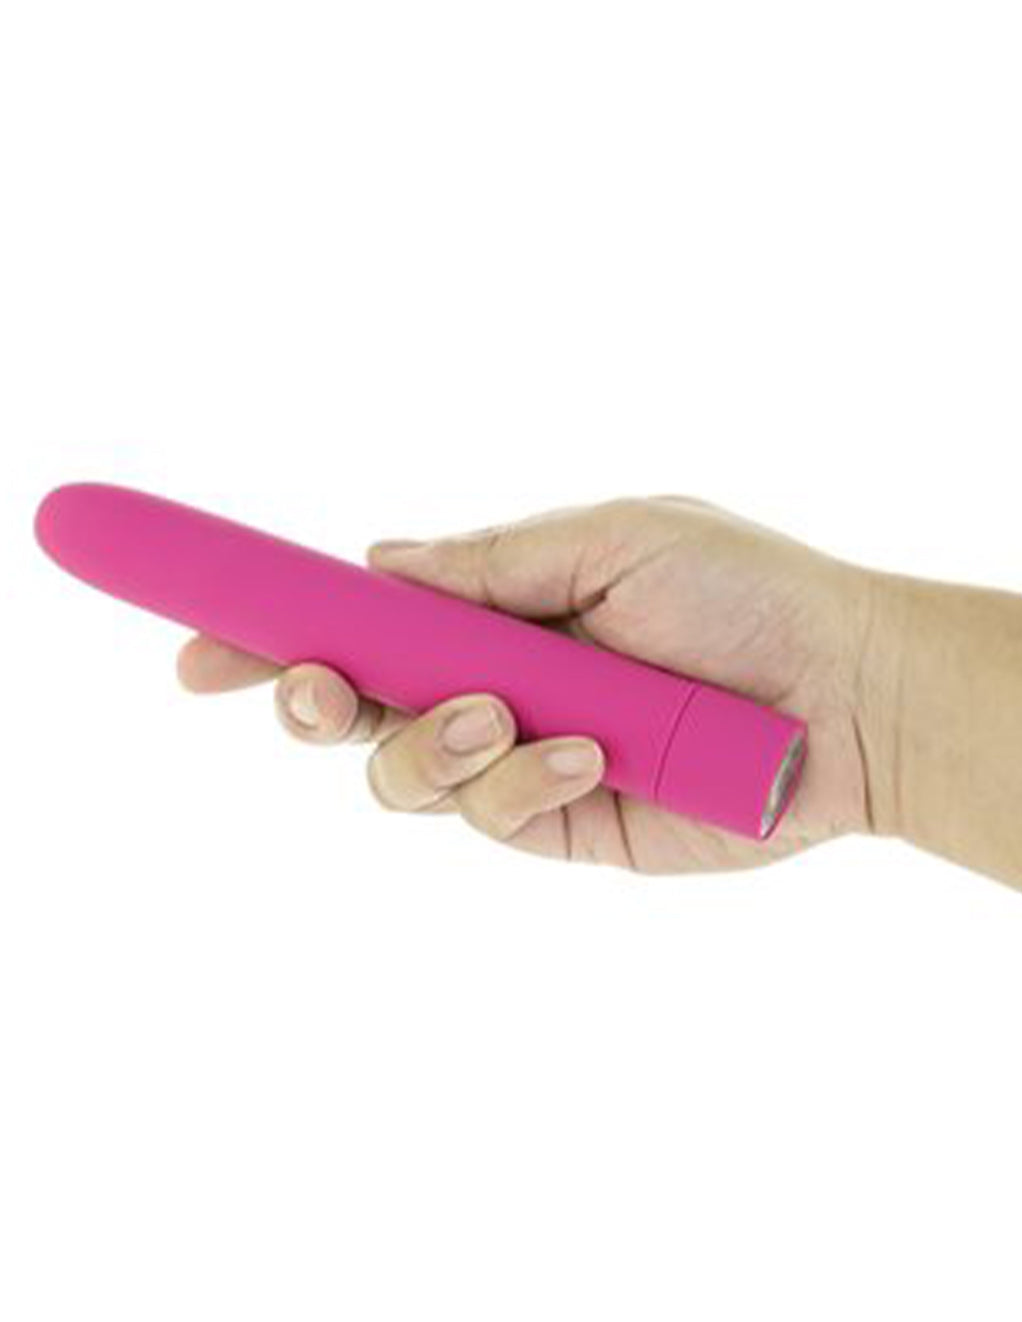 Eezy Pleezy Bullet Vibrator- Pink- In Hand